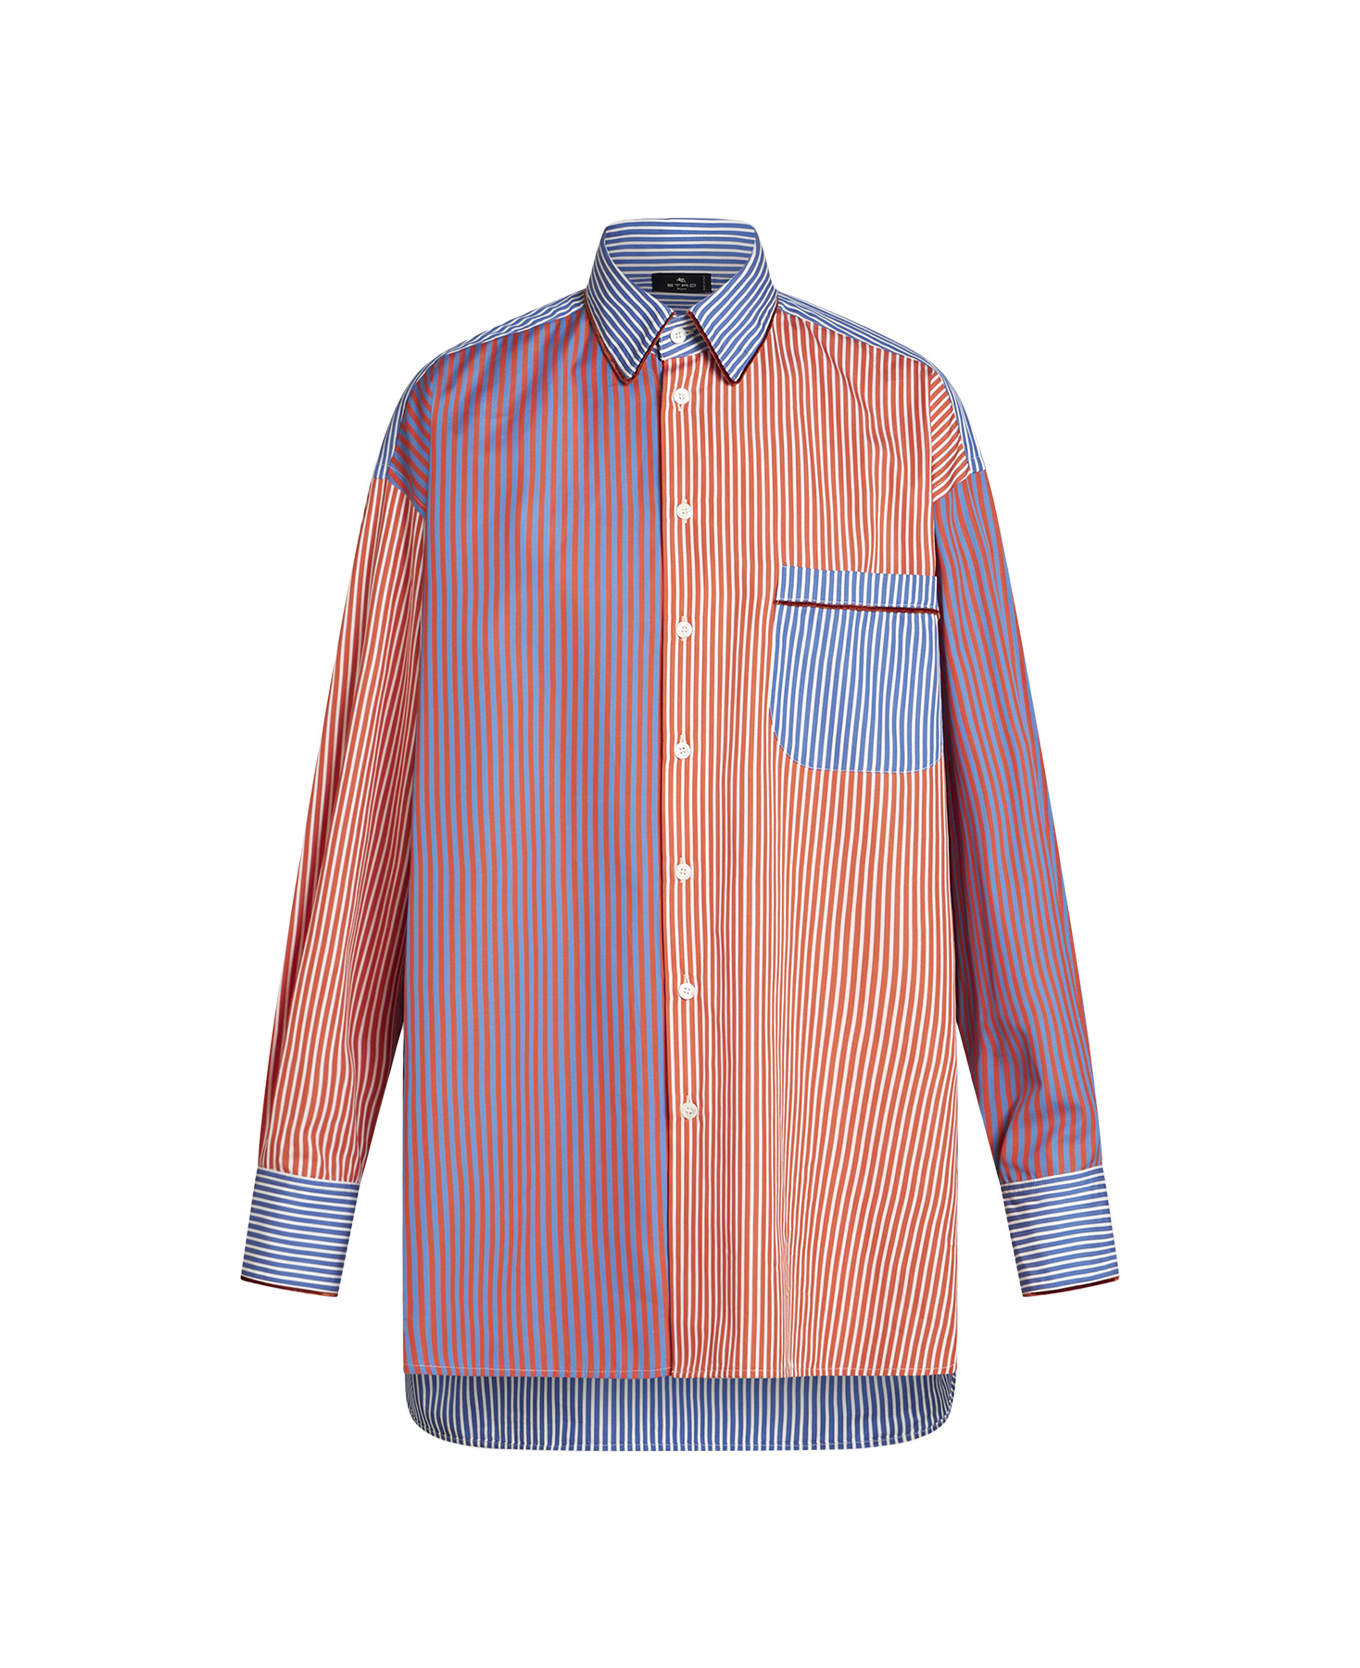 Etro Multicolored Striped Cotton Shirt - Multicolour シャツ